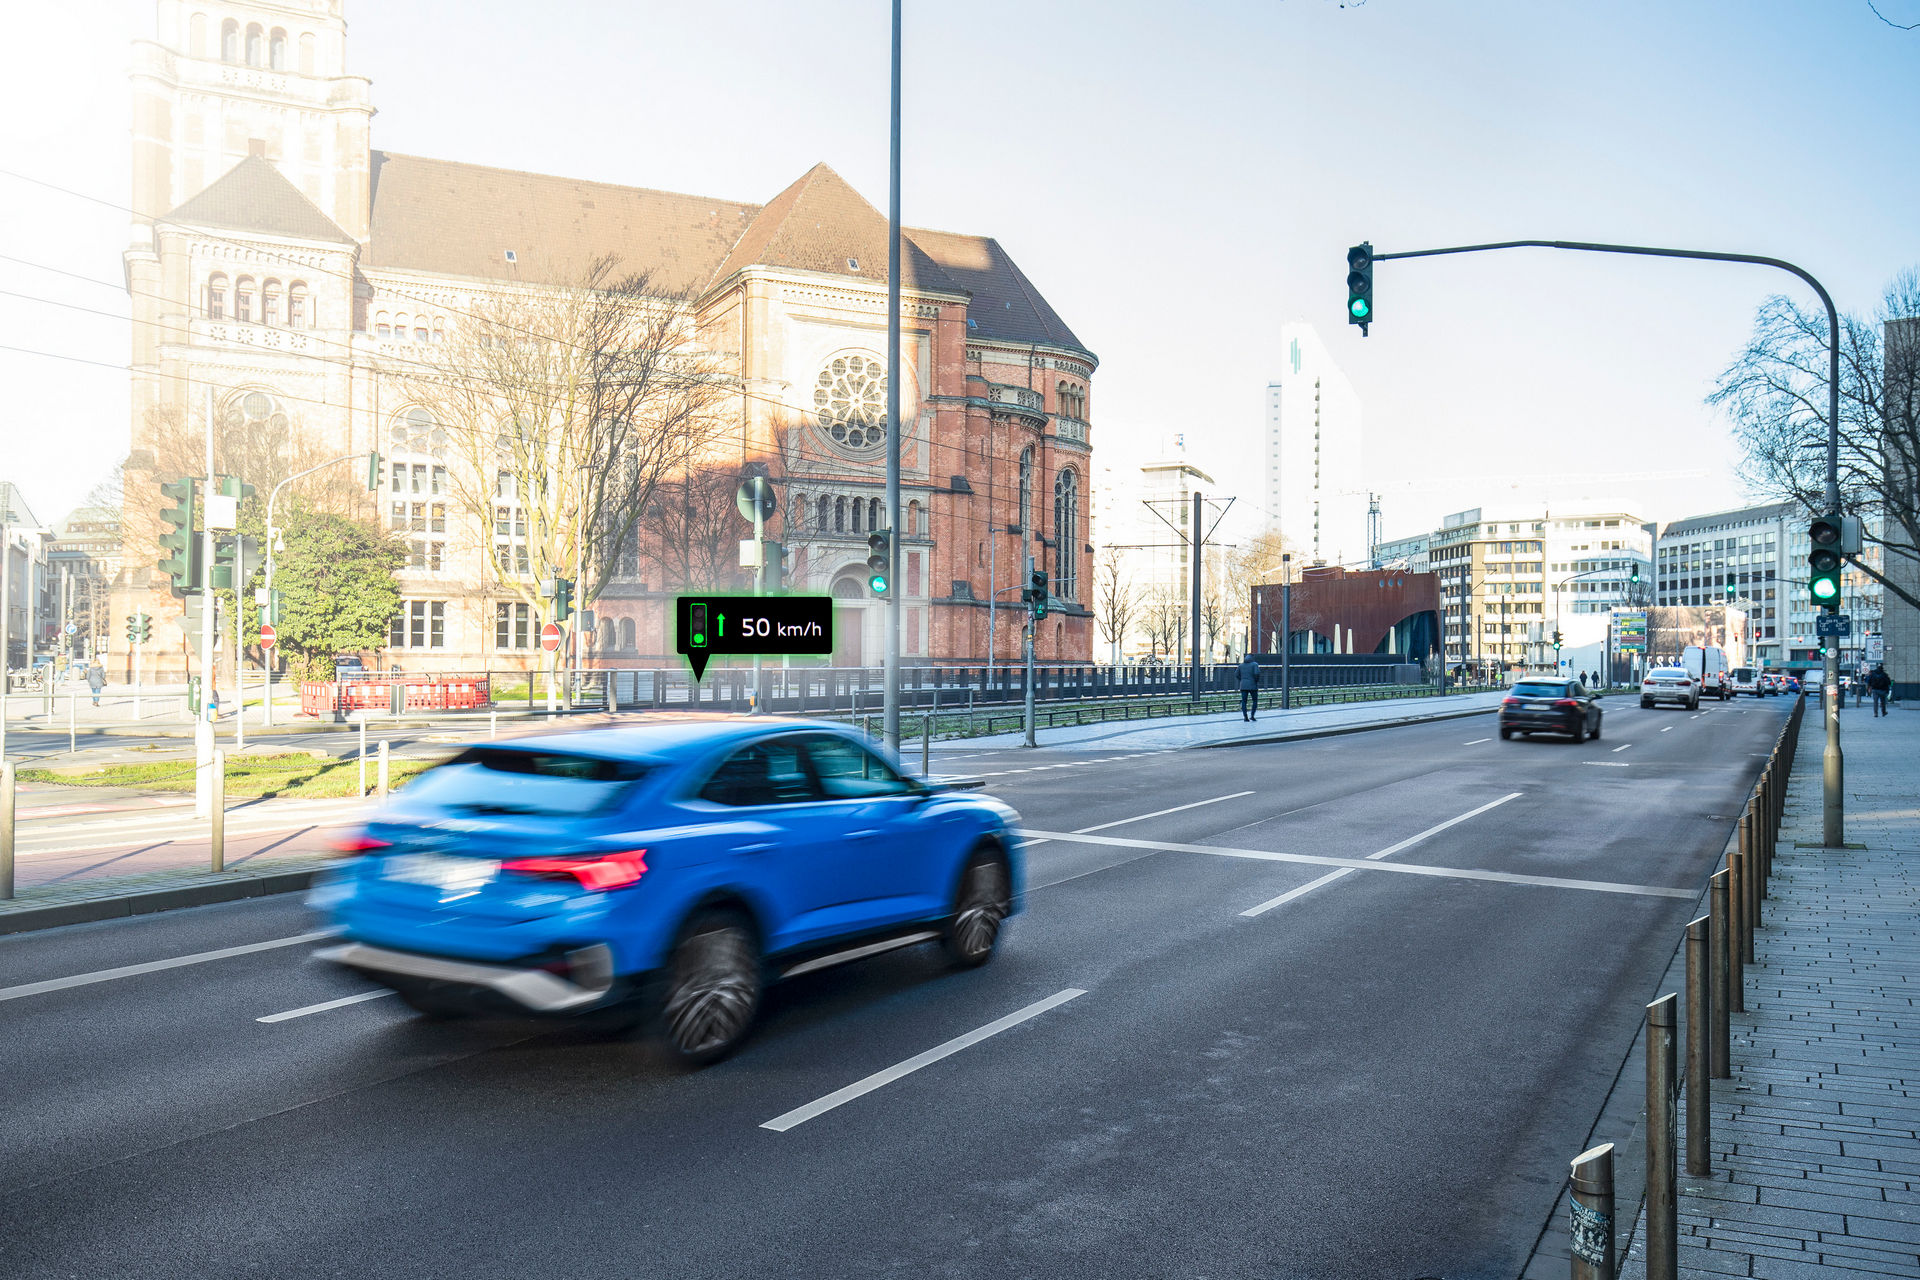 سيارات اودي تبدأ بالتواصل مع إشارات المرور في ألمانيا!